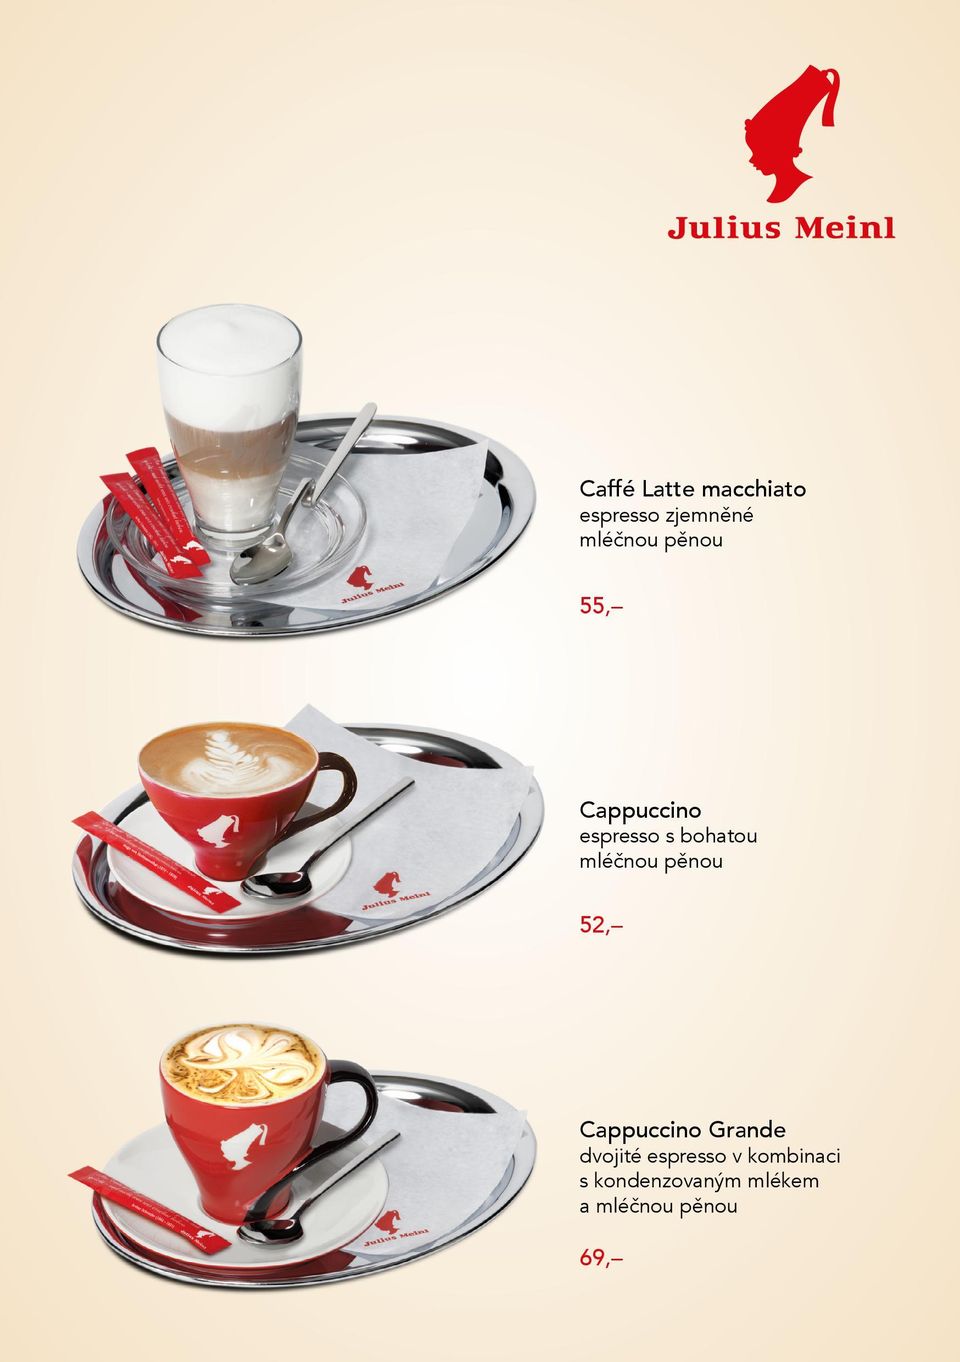 pěnou 52, Cappuccino Grande dvojité espresso v